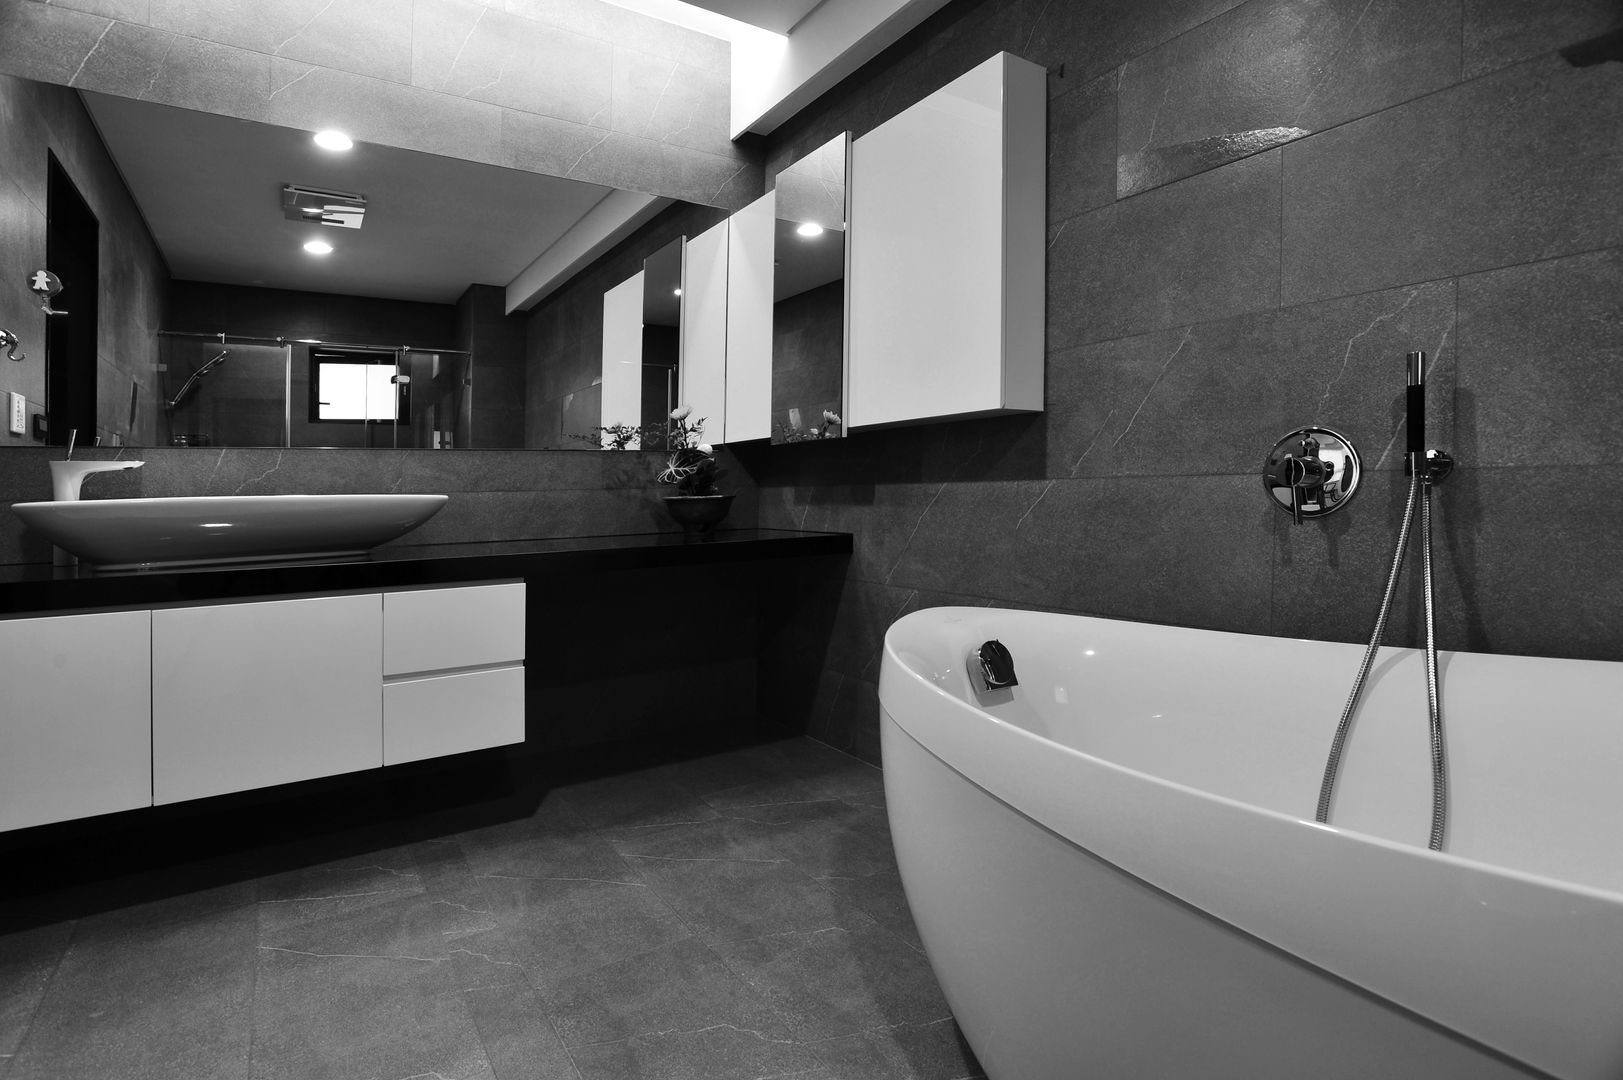 室內設計 東方帝國 SC House, 黃耀德建築師事務所 Adermark Design Studio 黃耀德建築師事務所 Adermark Design Studio Minimalist bathroom